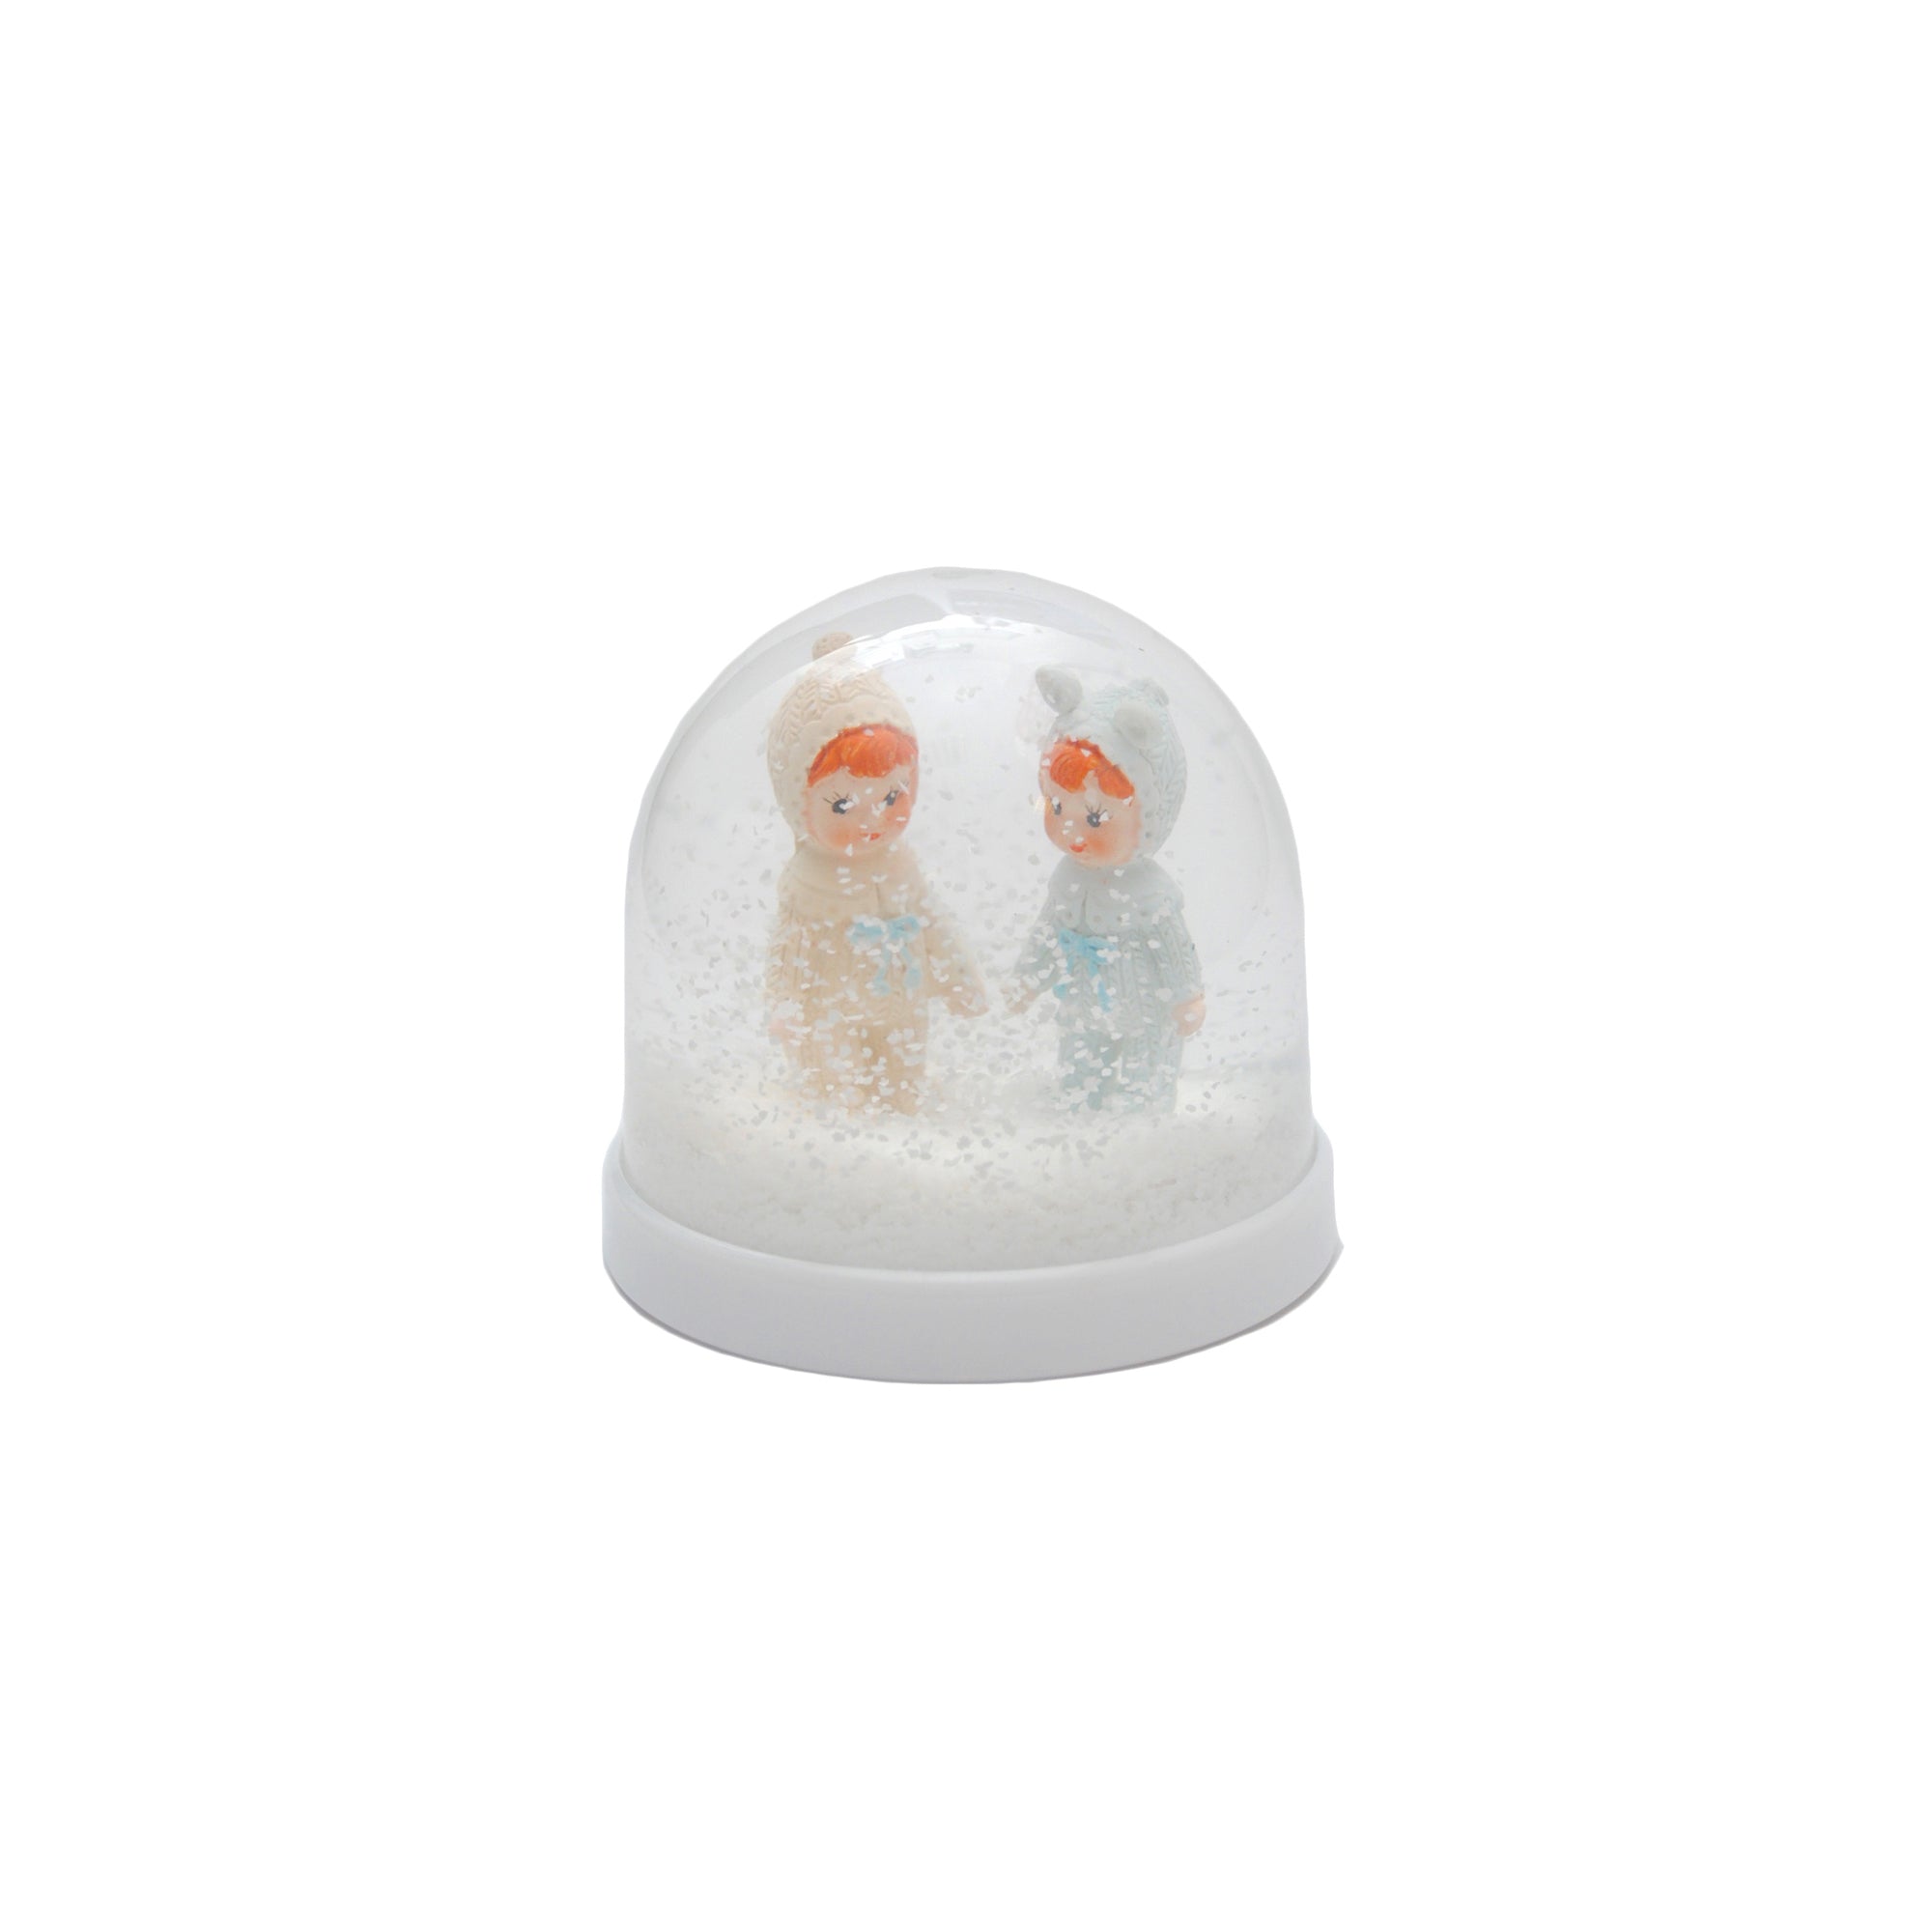 Woodland Dolls Snow Globe, available at Bobby Rabbit.